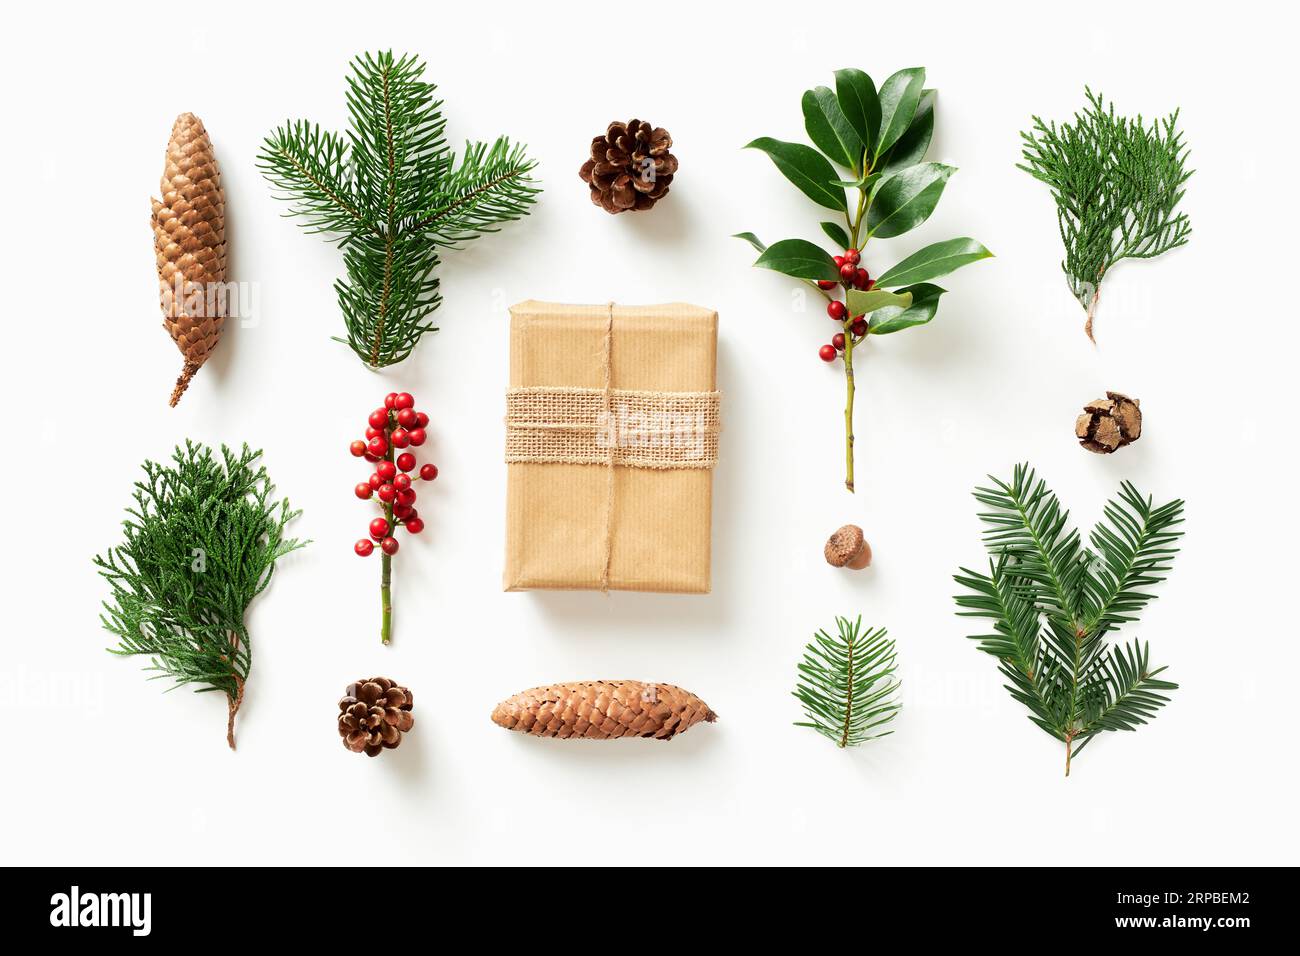 Geschenk mit verschiedenen Koniferen und Kegeln auf weißem Hintergrund. Flach liegend Weihnachtskomposition mit winterlicher Naturdekoration. Stockfoto